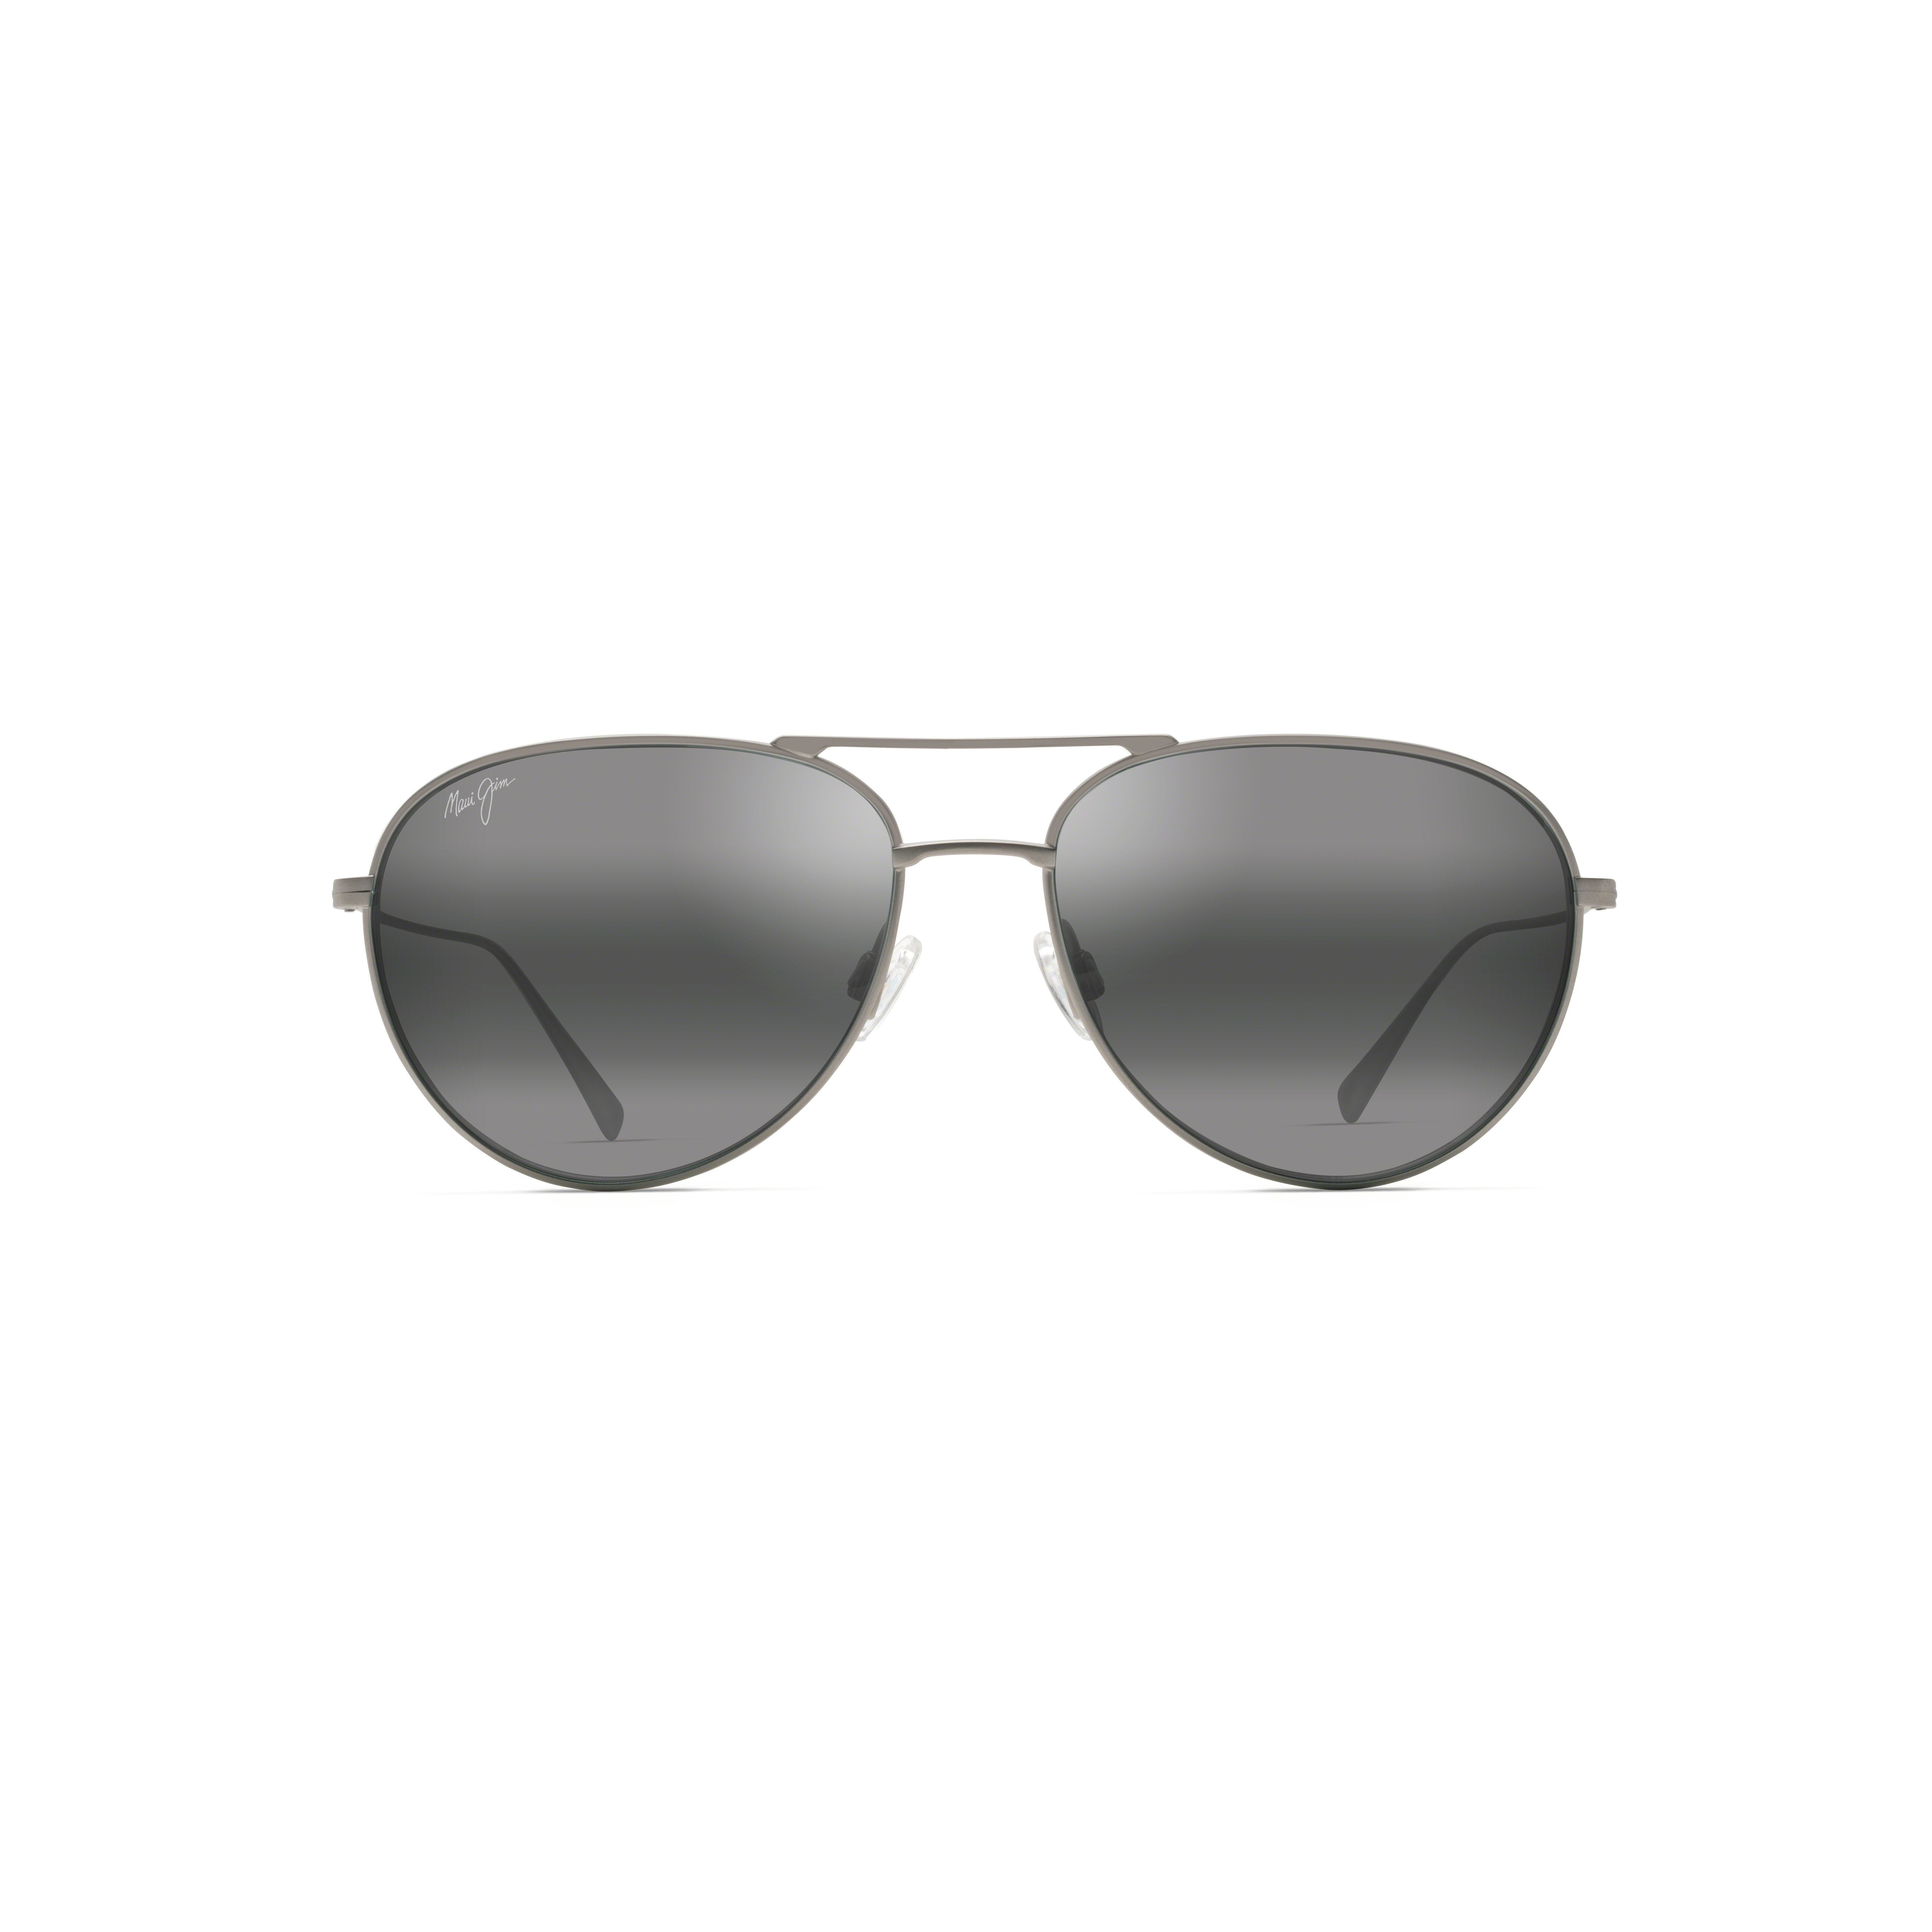 WALAKA Pilot Sunglasses 17 - size 57